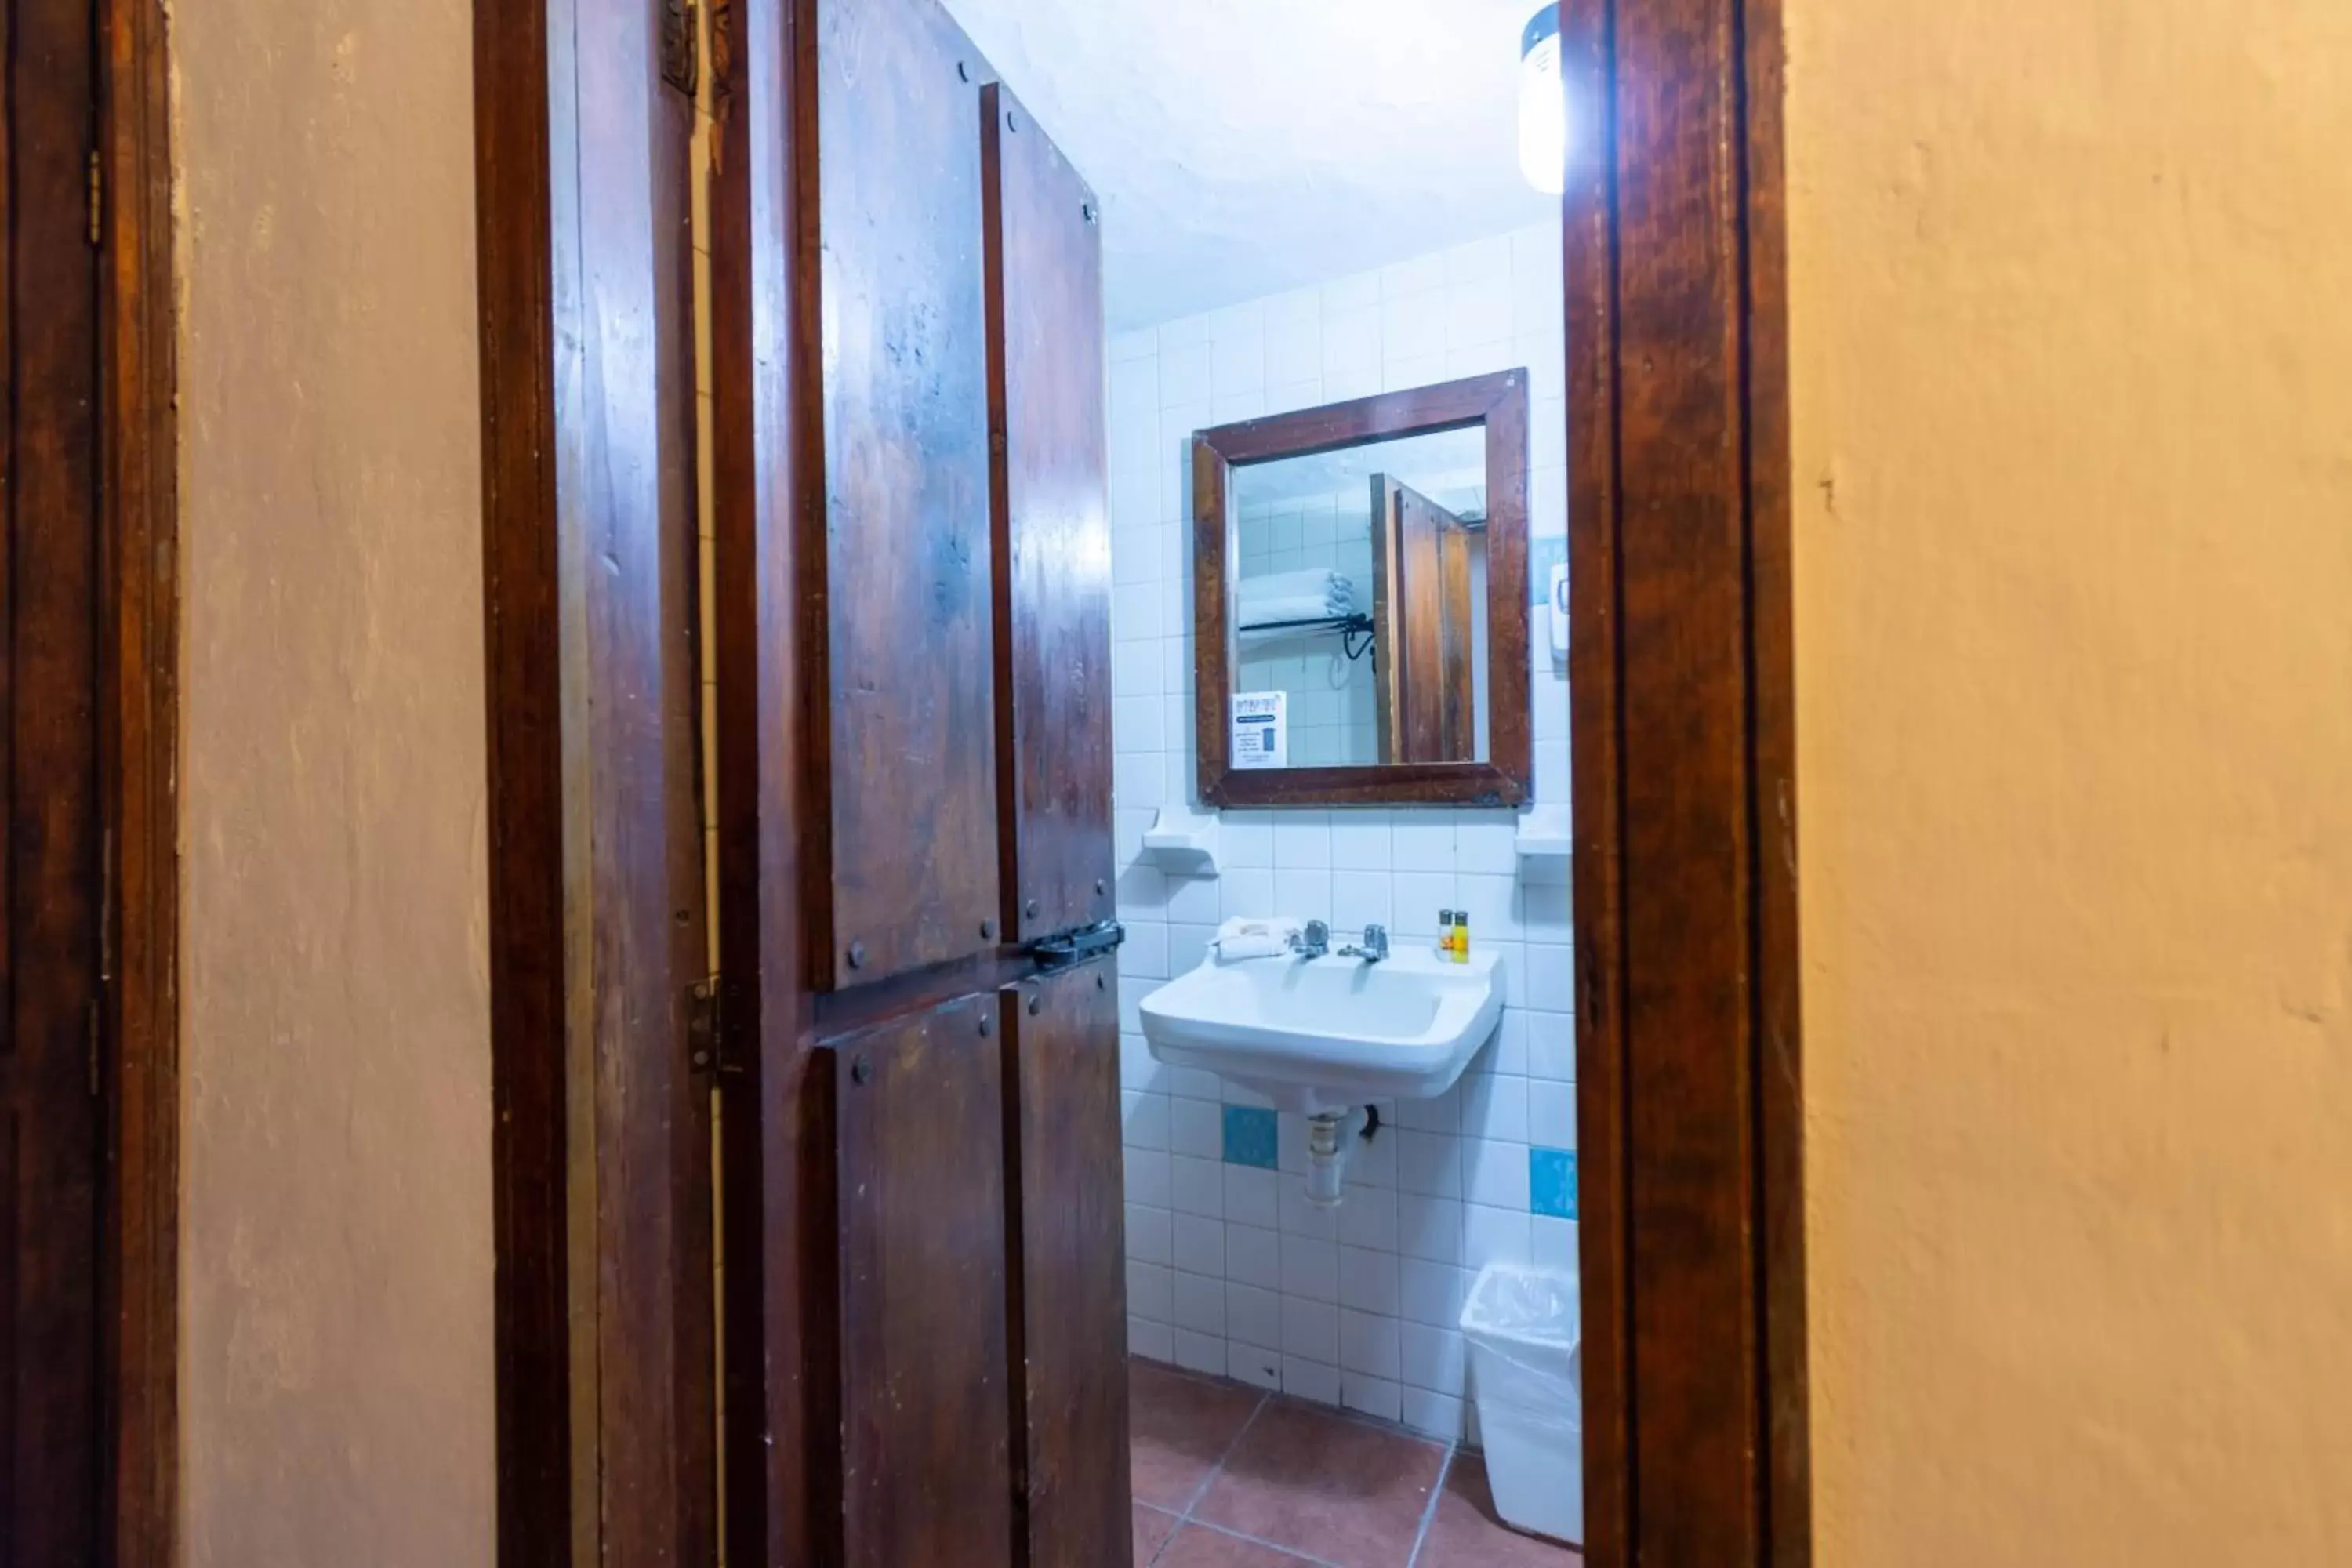 Bathroom in Hosteria del Frayle